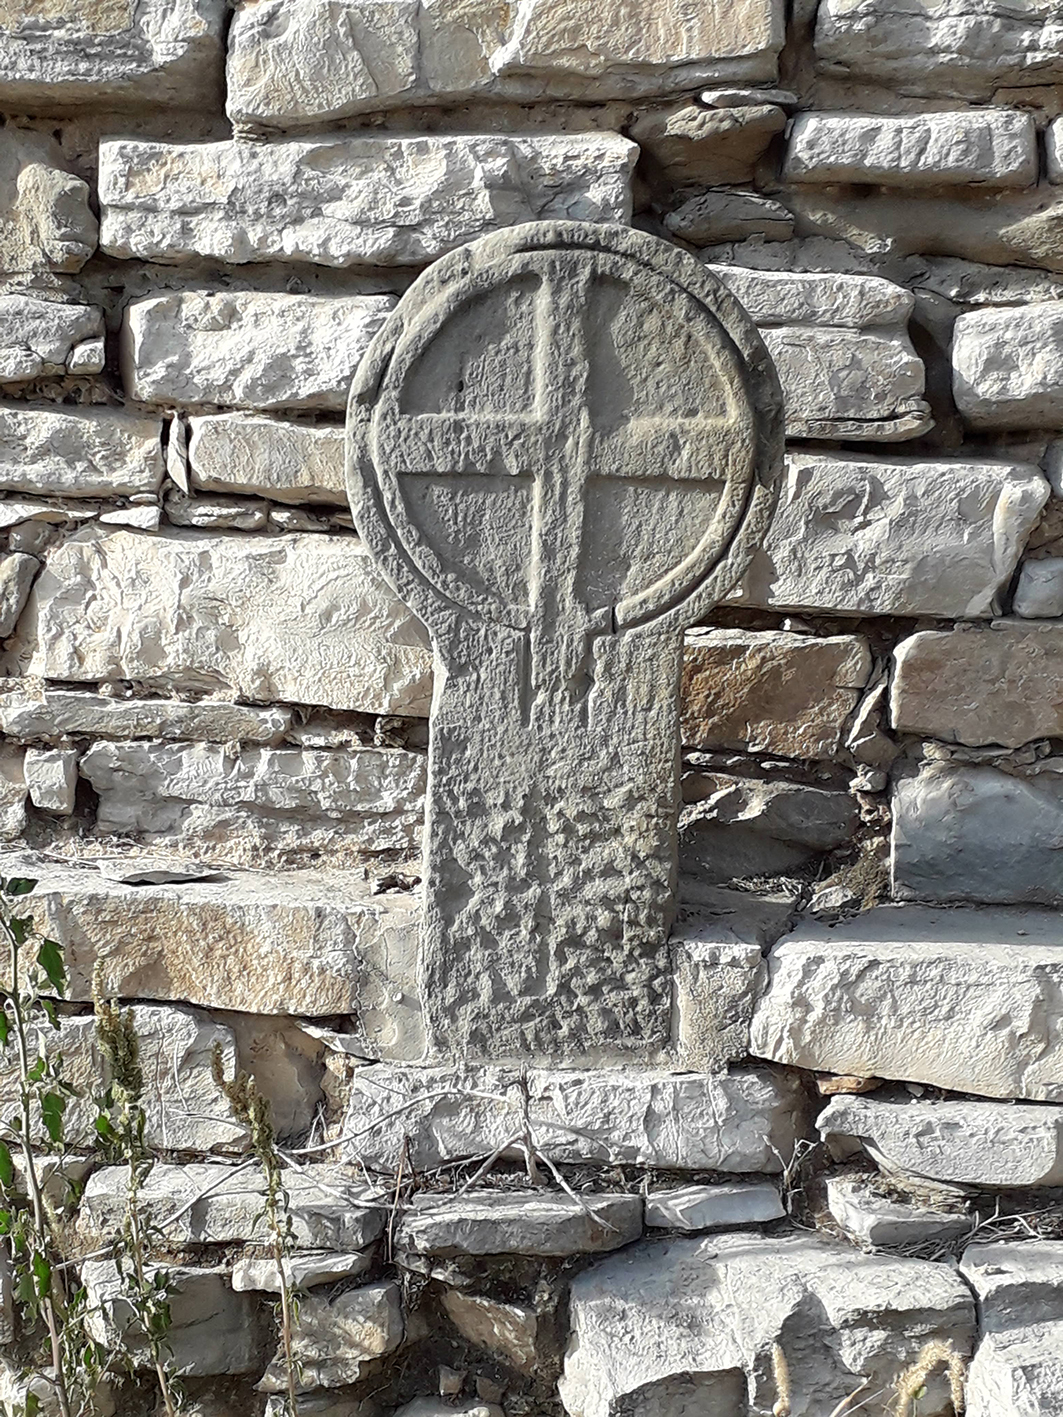 06.09.2021 Estela funerària discoïdal amb creu grega inscrita en un cercle.  El Llor (La Segarra) -  J. Bibià